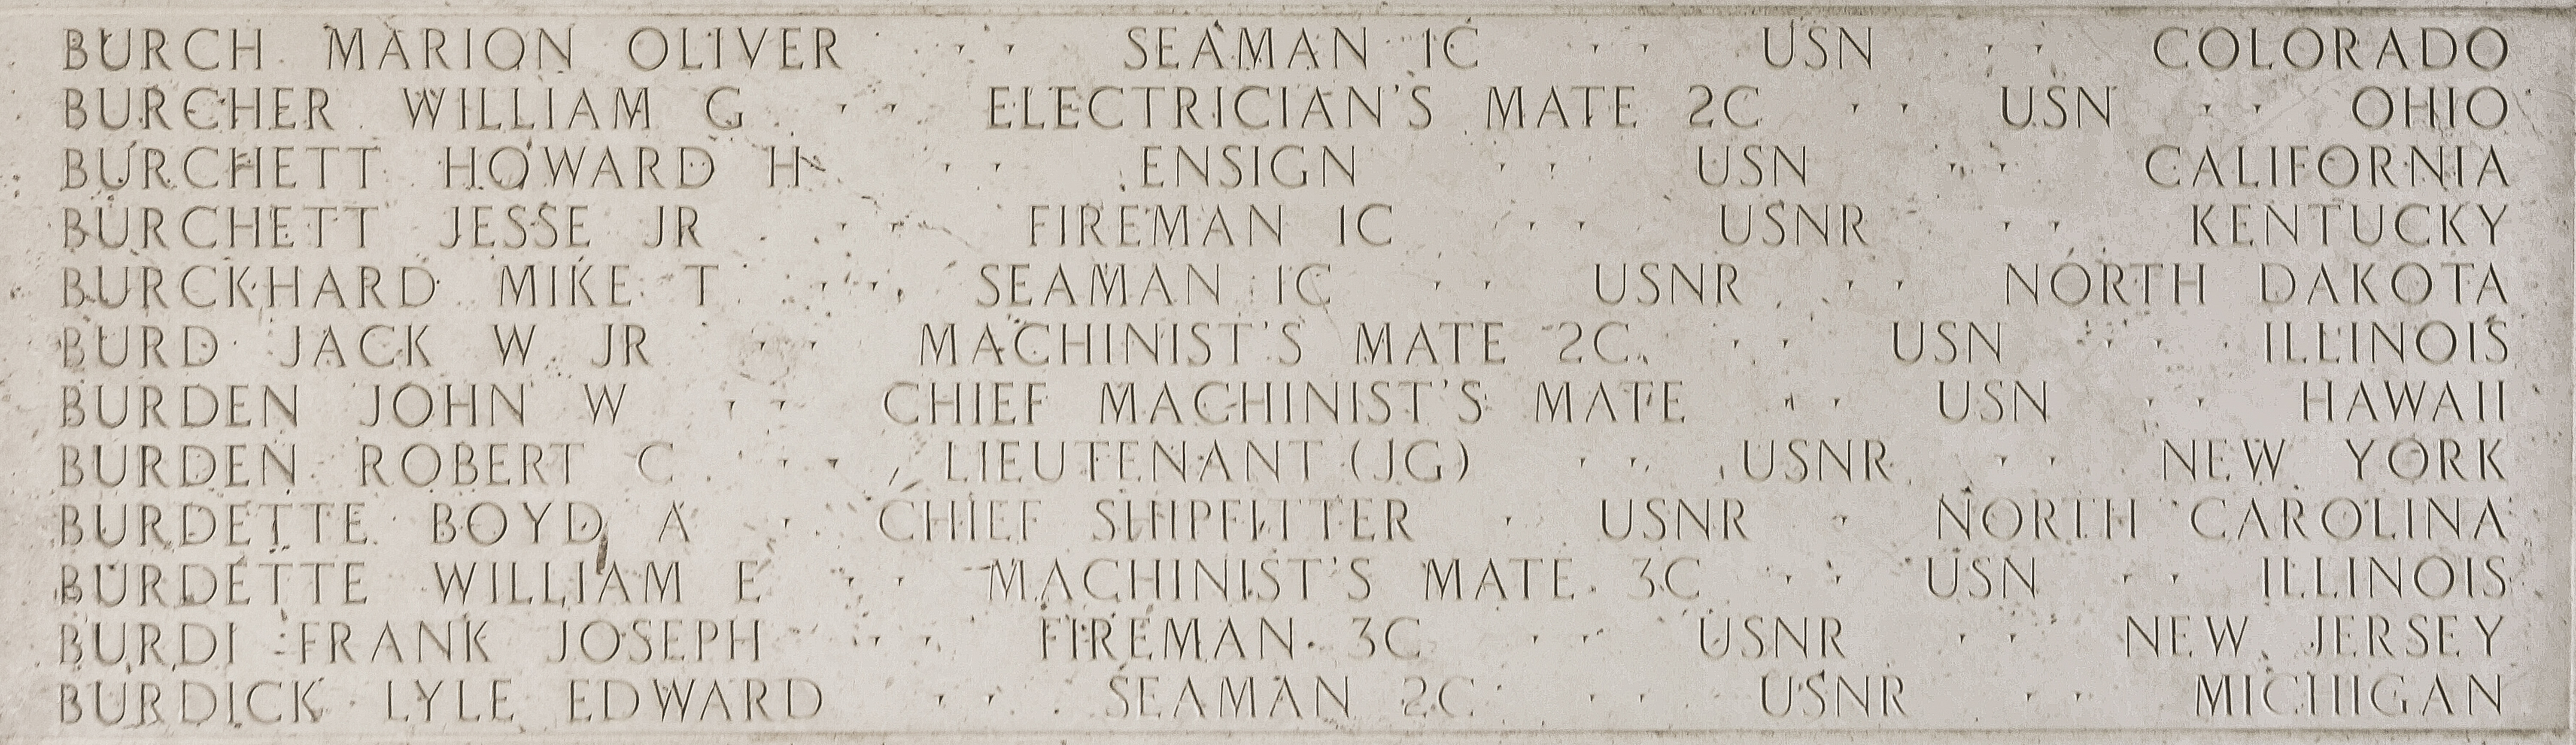 William G. Burcher, Electrician's Mate Second Class